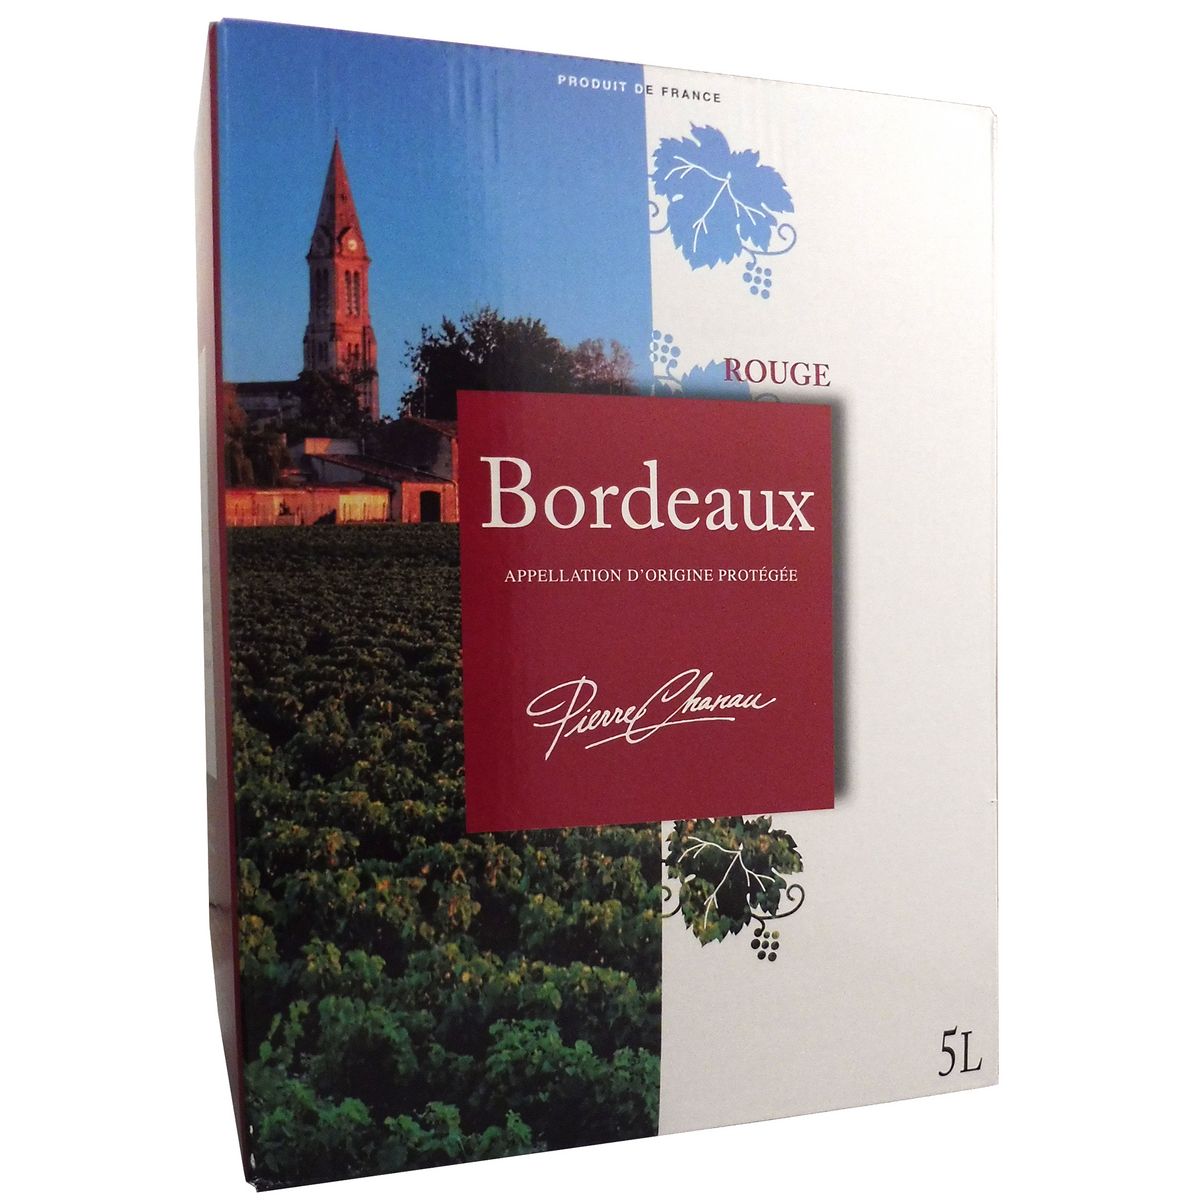 PIERRE CHANAU AOP Bordeaux rouge Grand format 5L